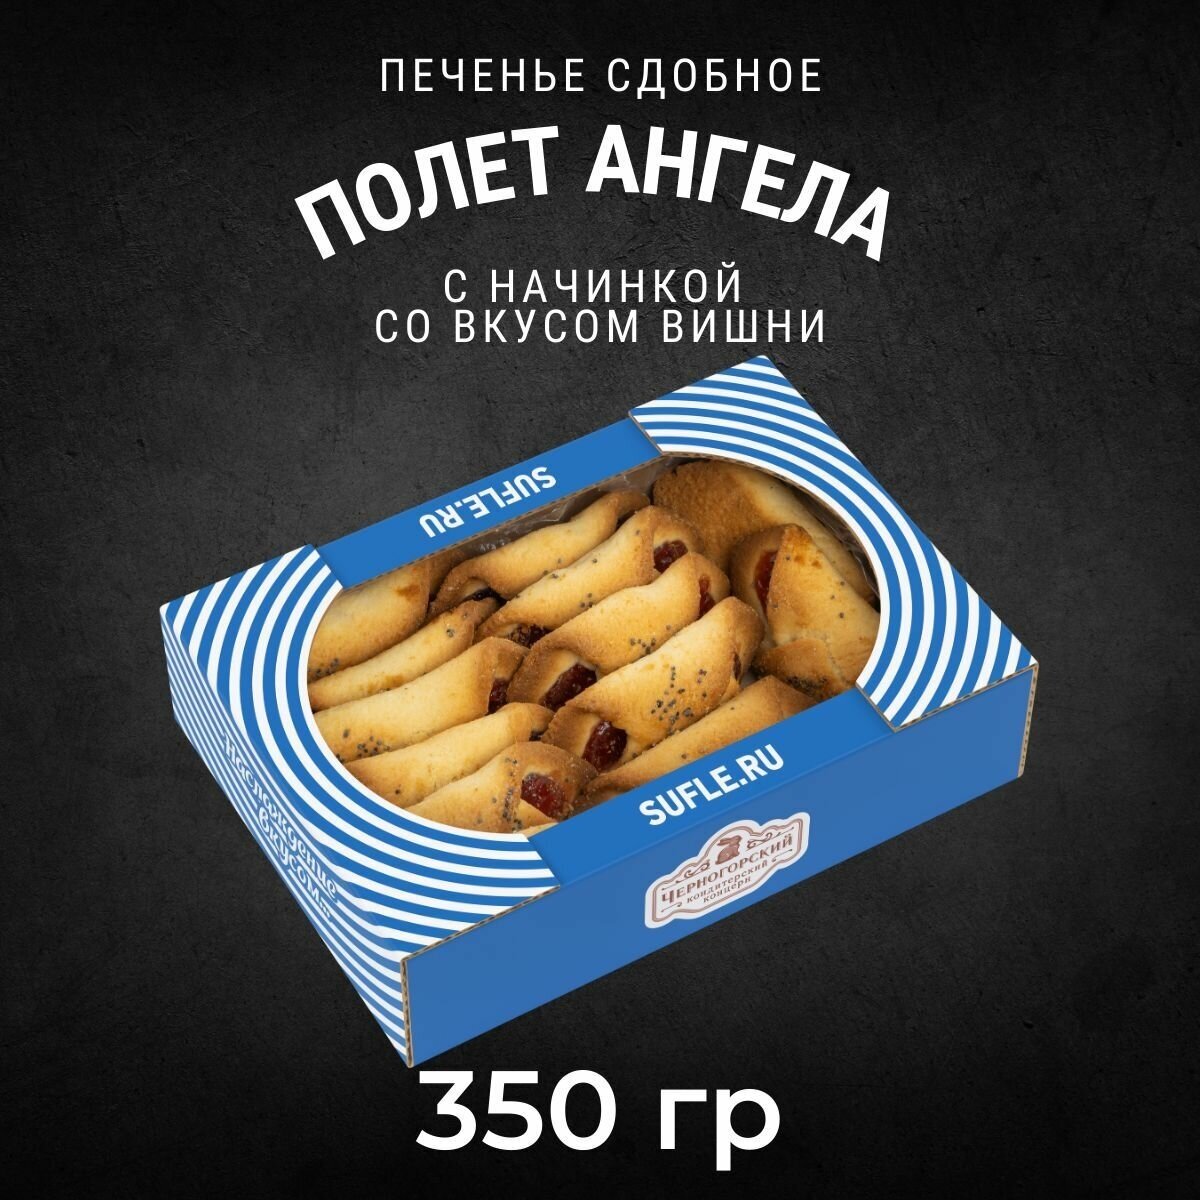 Печенье сдобное полет ангела со вкусом вишни 350 грамм / Черногорский - фотография № 1